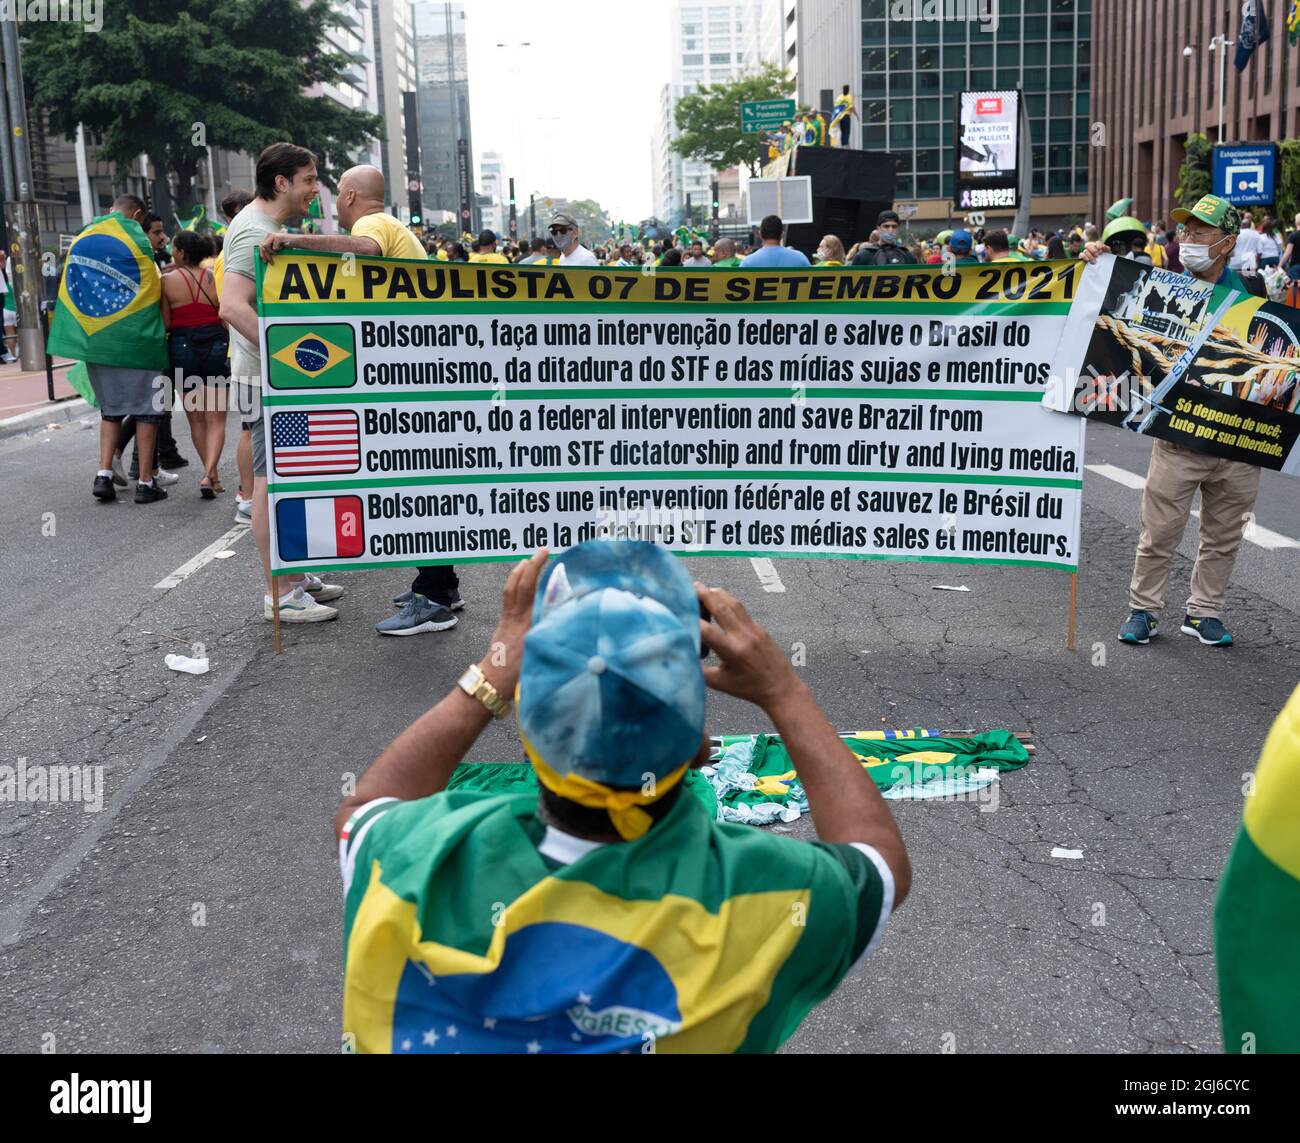 Homme brésilien prenant une photo lors d'un affichage pro-Bolsonaro le 7 septembre Banque D'Images